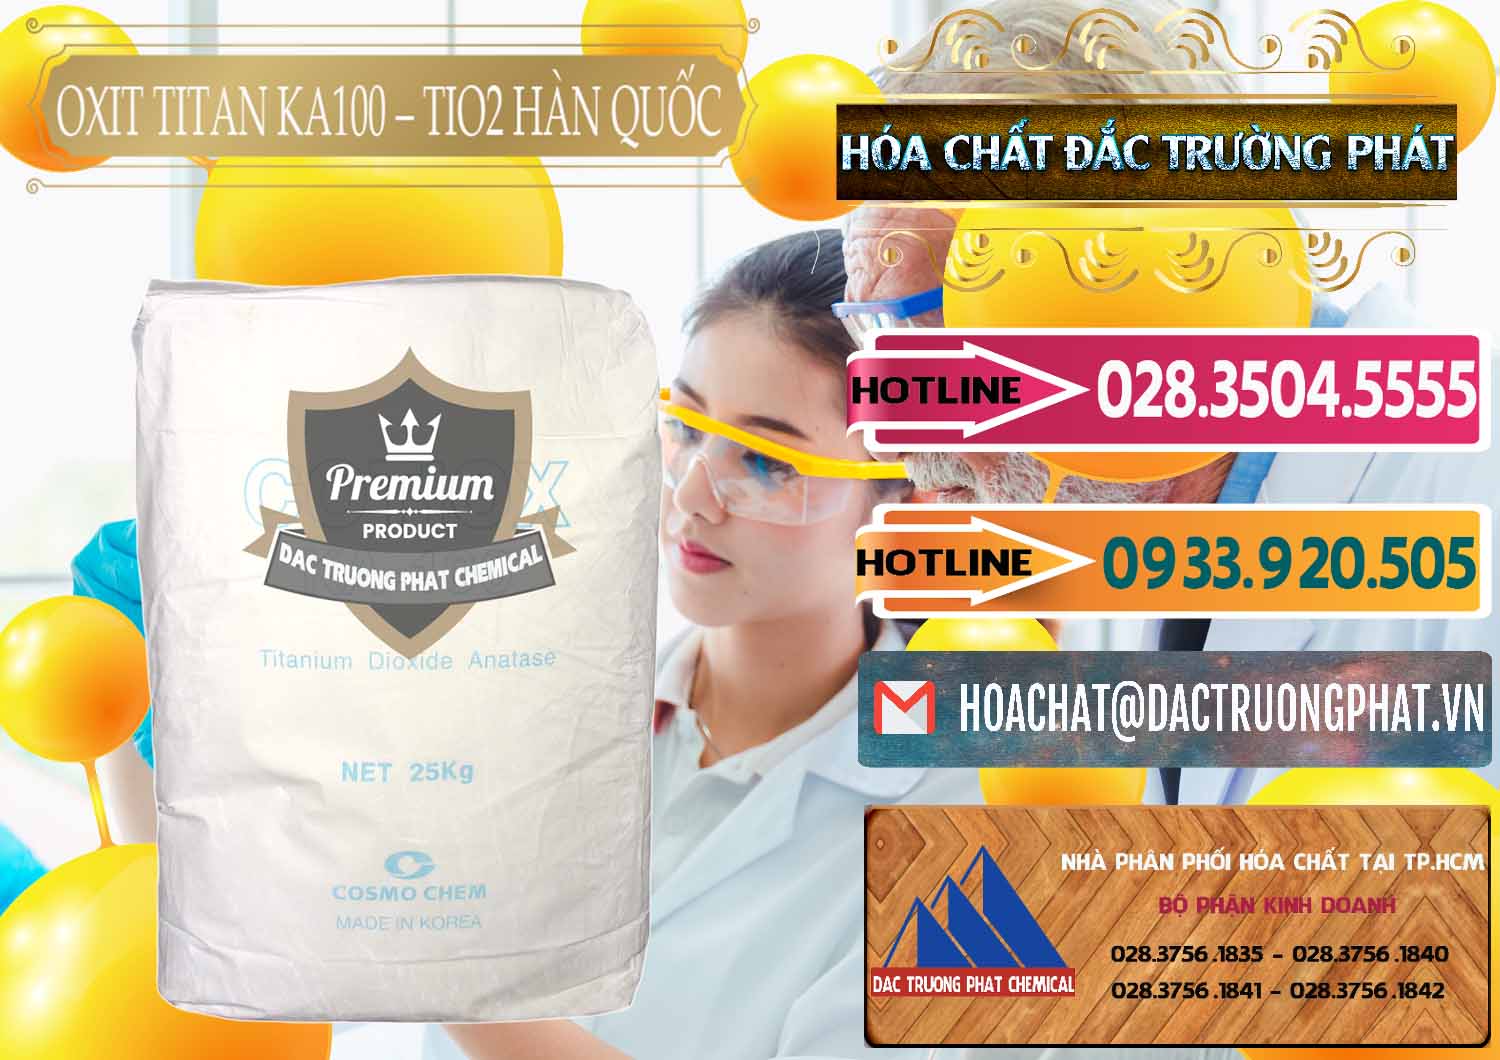 Cty chuyên cung cấp - bán Oxit Titan KA100 – Tio2 Hàn Quốc Korea - 0107 - Nơi nhập khẩu và phân phối hóa chất tại TP.HCM - dactruongphat.vn